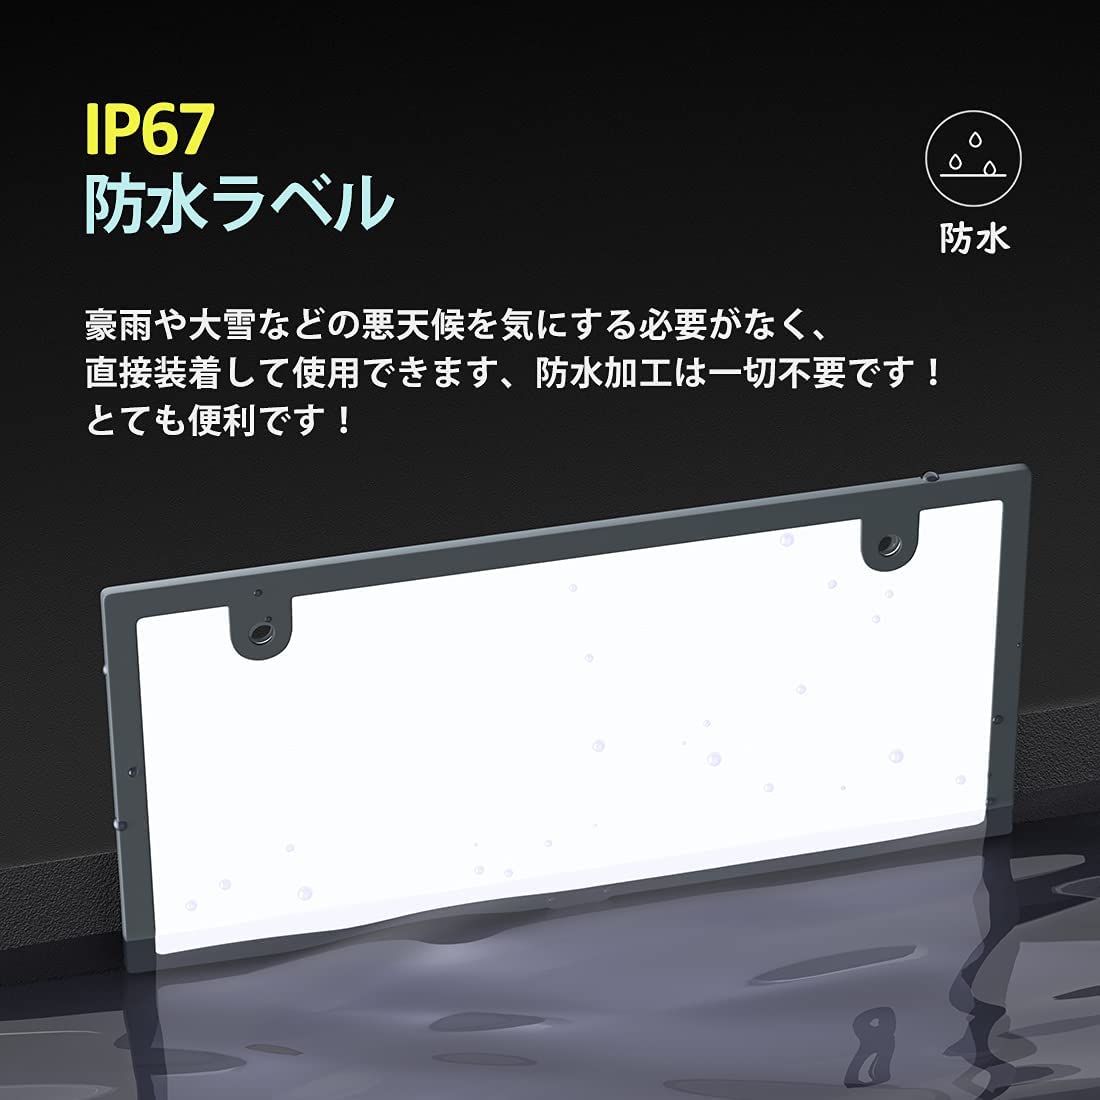  подсветка букв LED номерная табличка LED молния тип номерная табличка IP67 совершенно водонепроницаемый белый все люминесценция супер высокая яркость ультратонкий 6mm соответствующий требованиям техосмотра 12V специальный передний задний передний и задний (до и после) 2 шт. комплект 